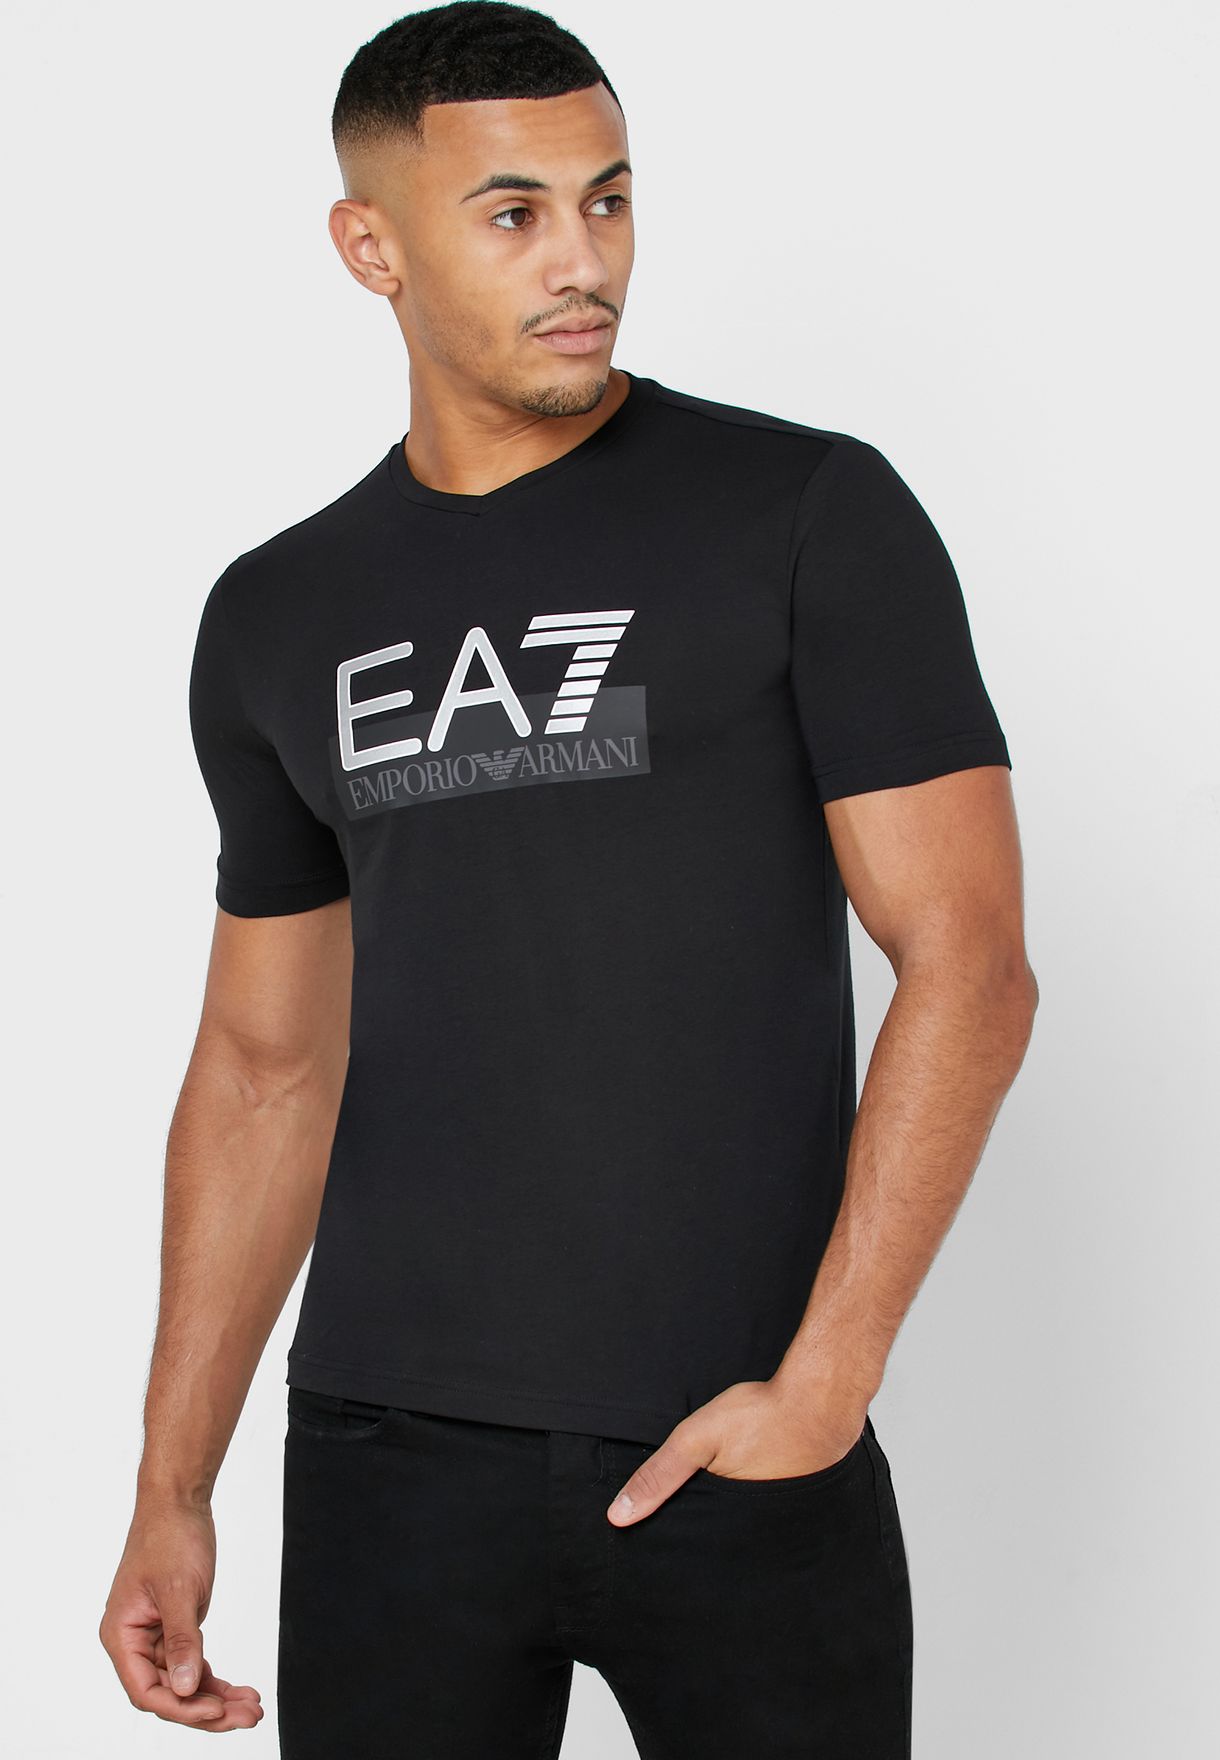 ea7 crew neck t shirt